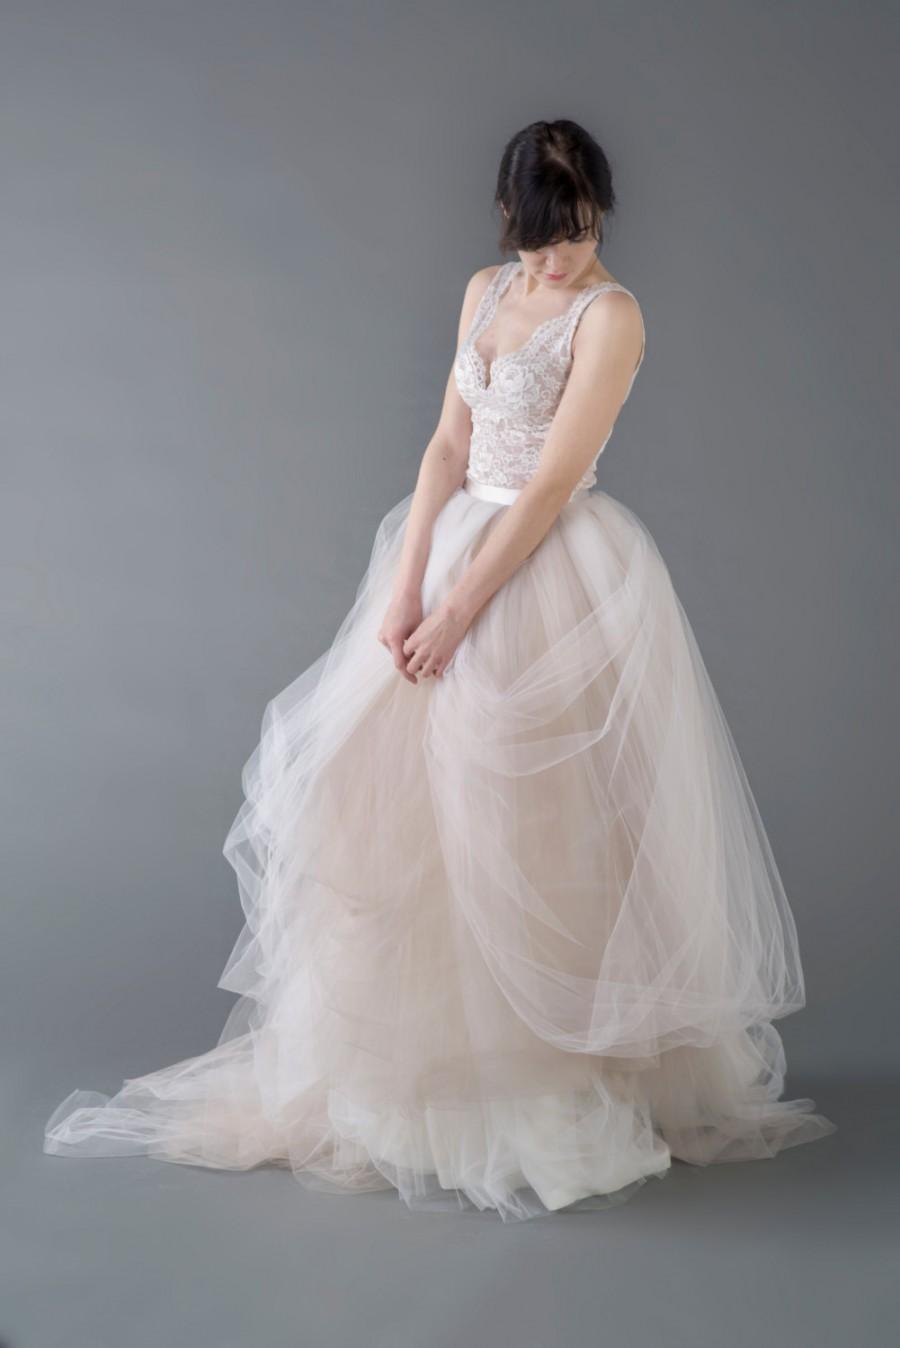 زفاف - Catherine - two piece wedding dress / bridal gown  / nude bridal gown / champagne wedding dress / tulle wedding dress / unique wedding dress